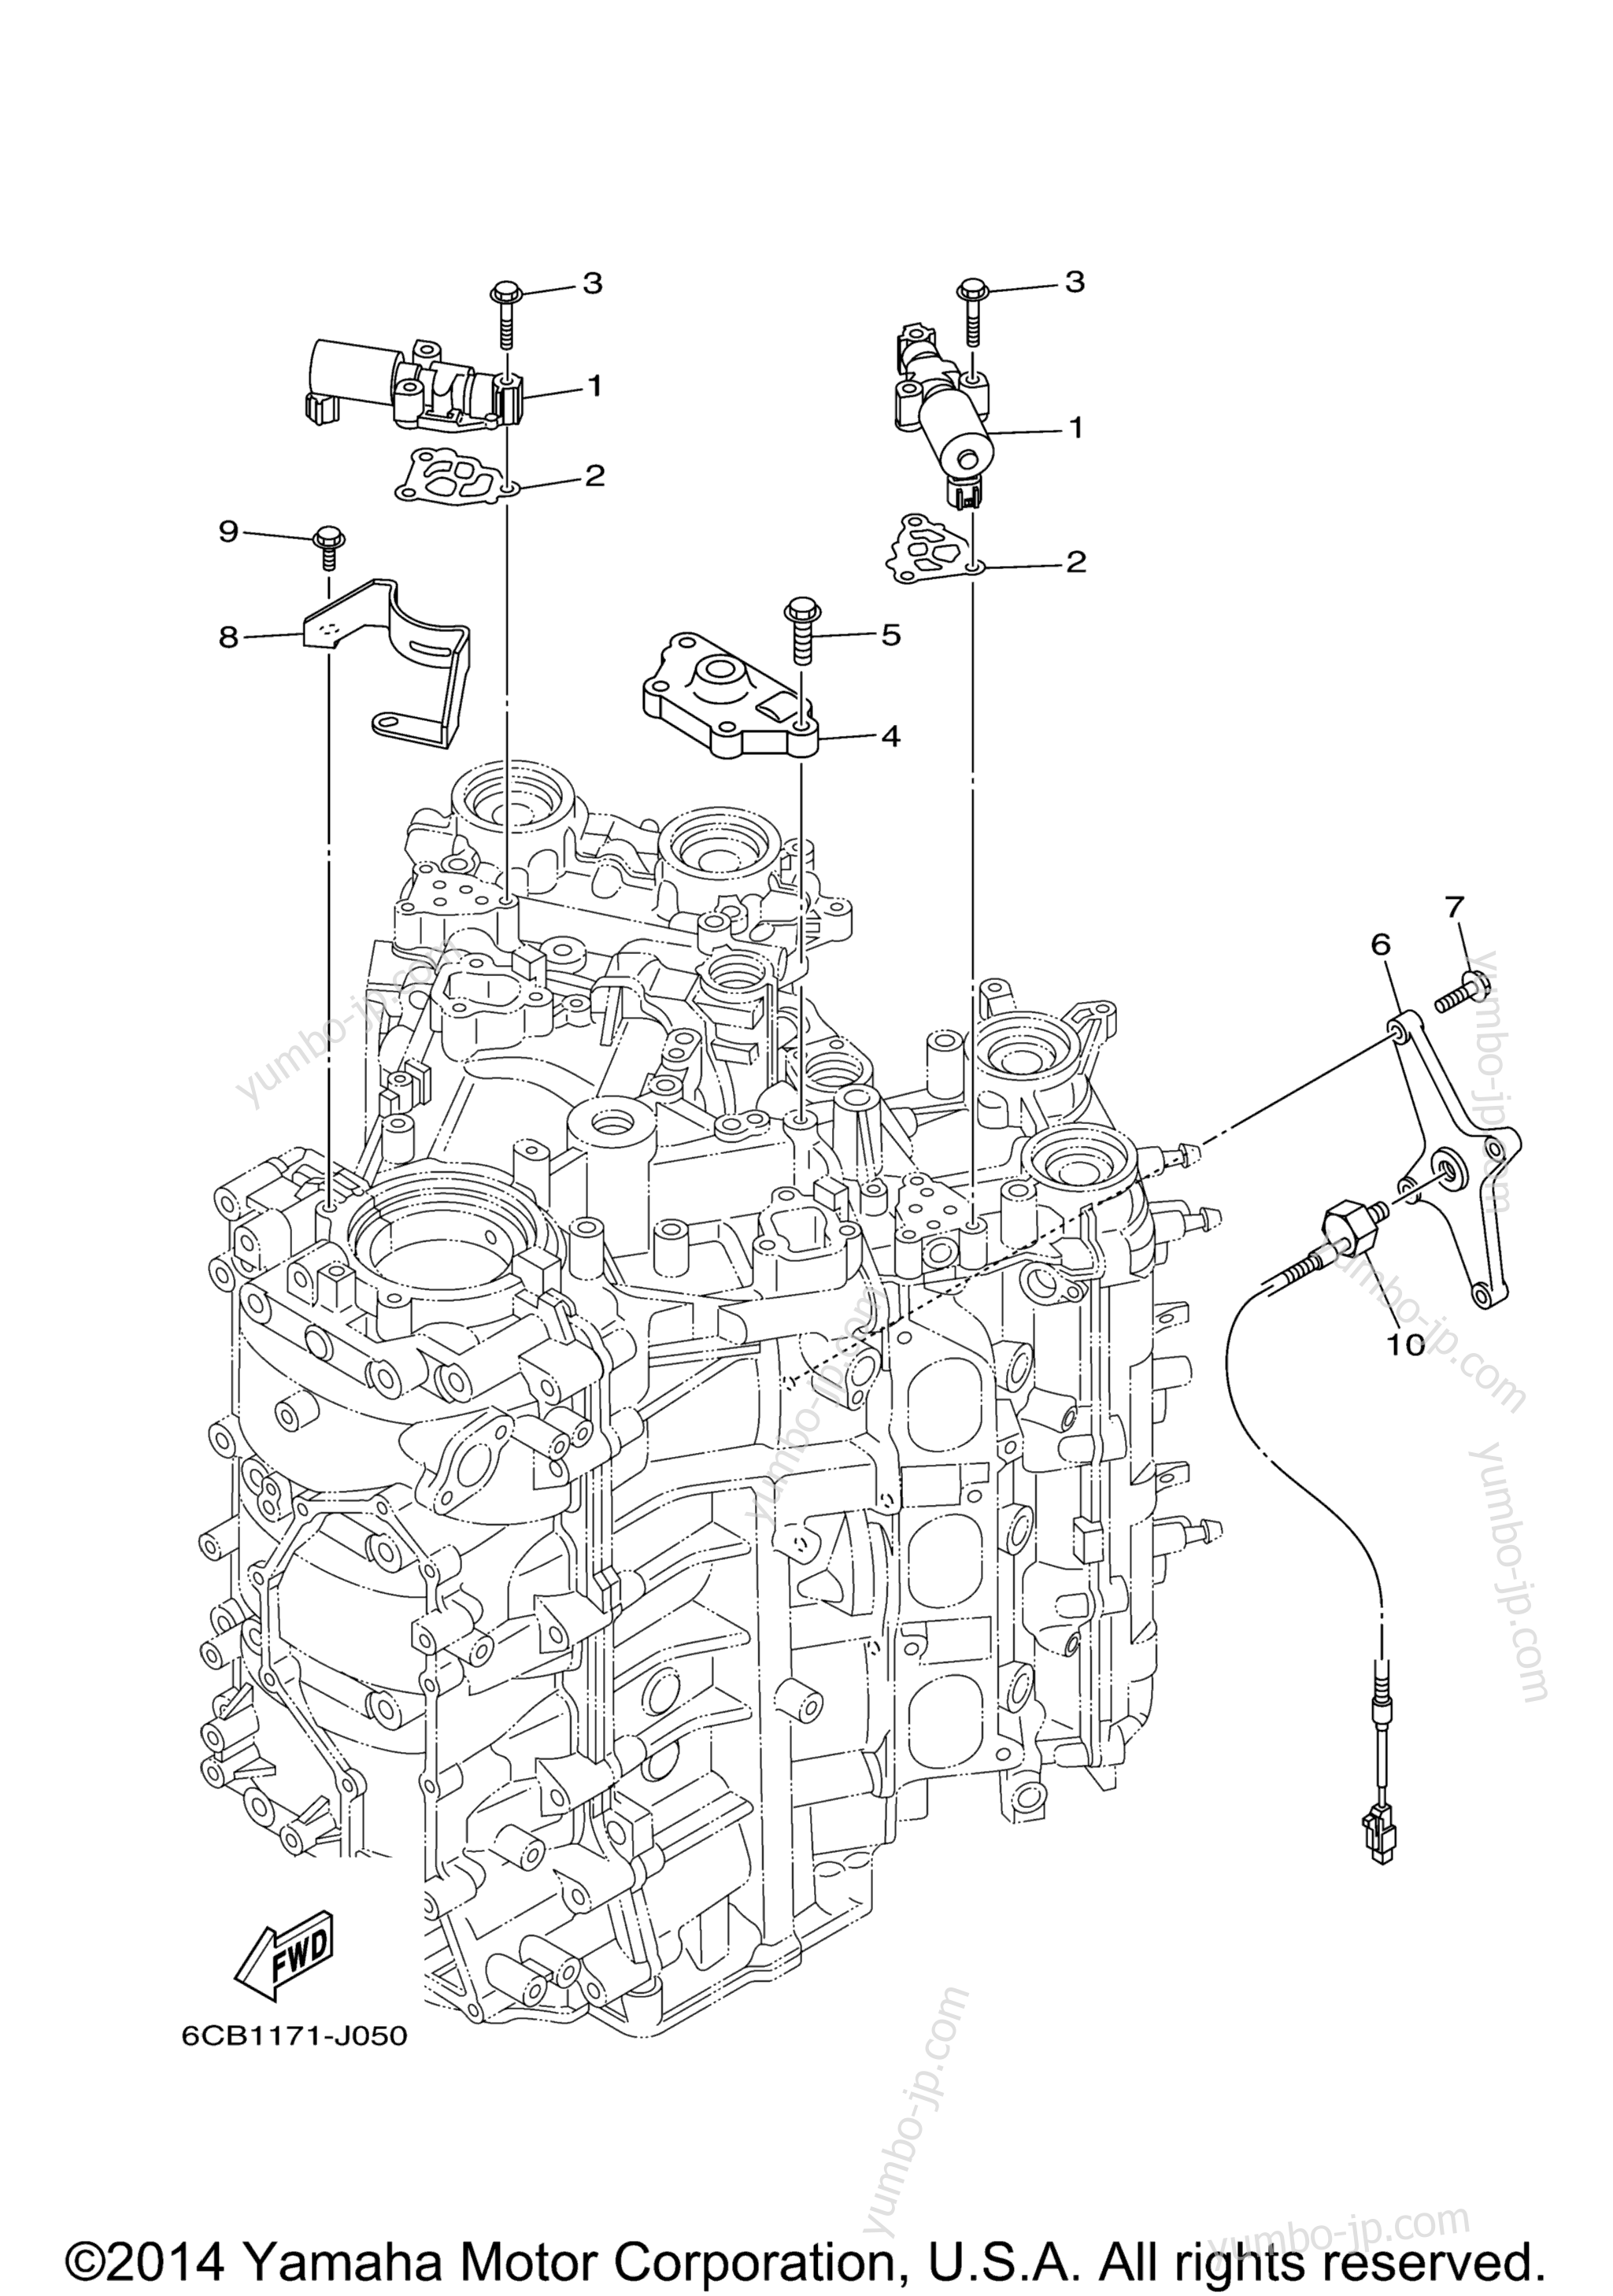 Cylinder Crankcase 3 для лодочных моторов YAMAHA LF250UCA_0 (0411) 2006 г.